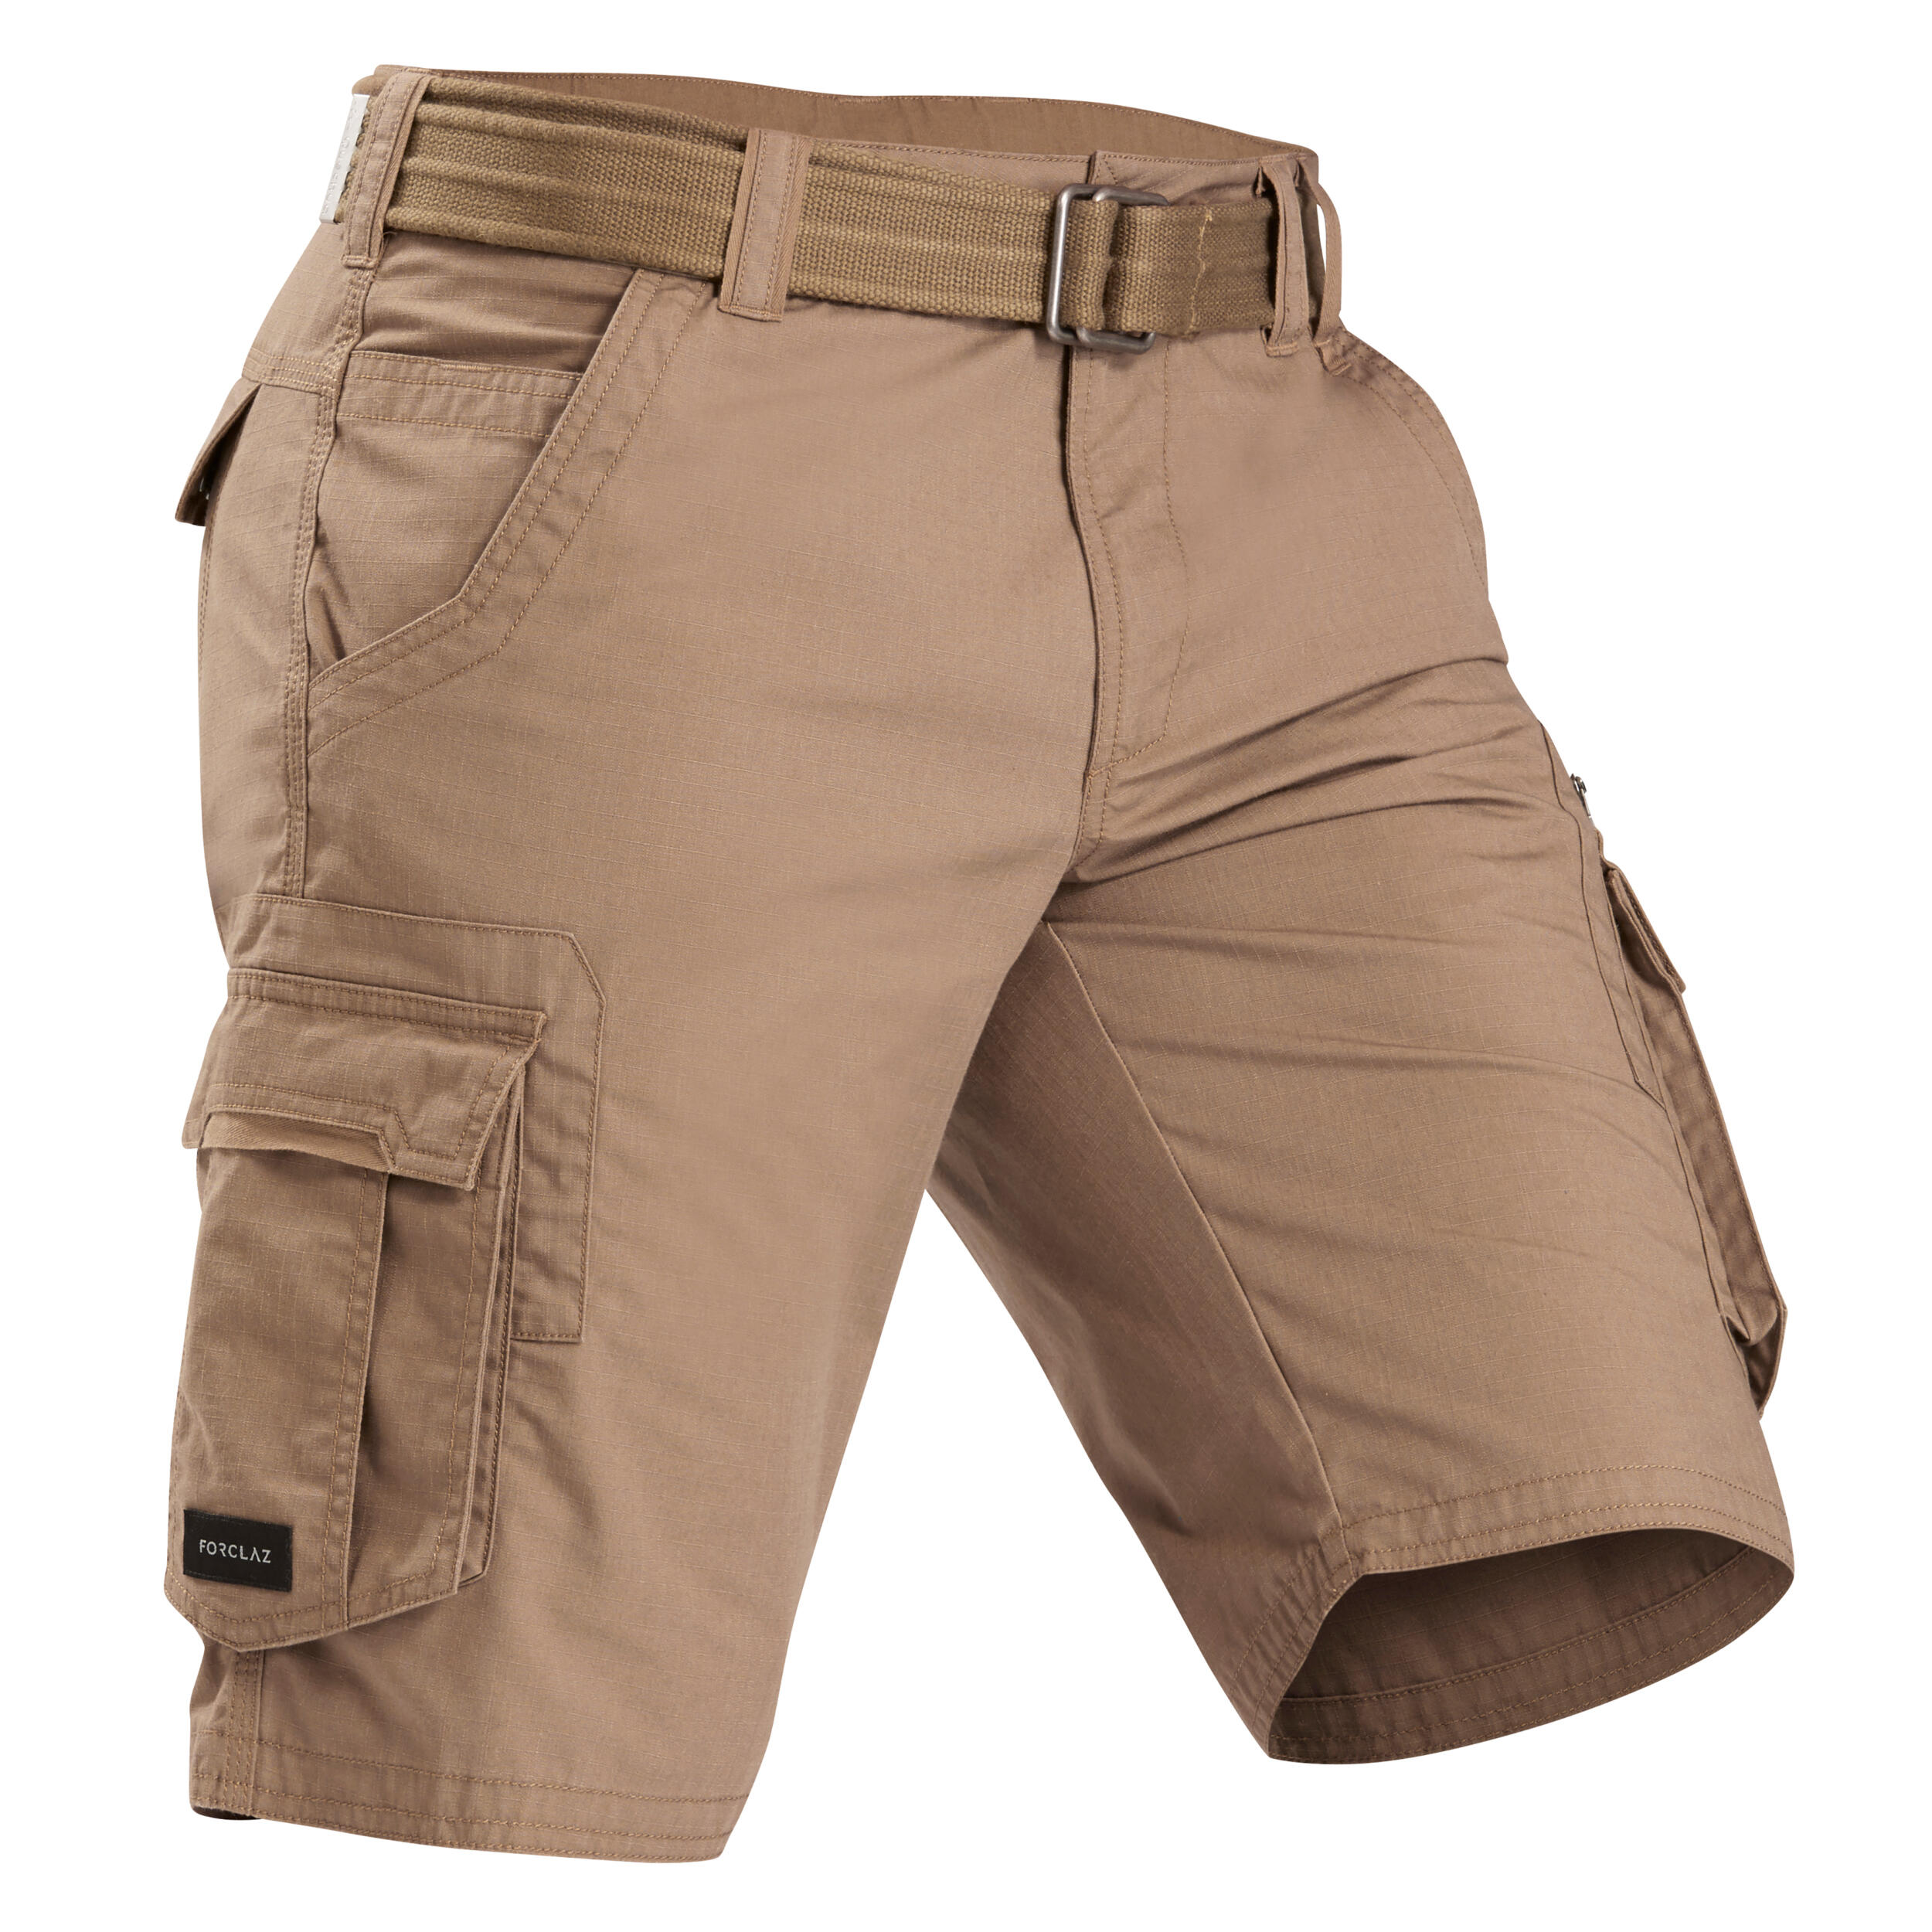 Buy Men's Travel Trekking Cargo Shorts Brown Online